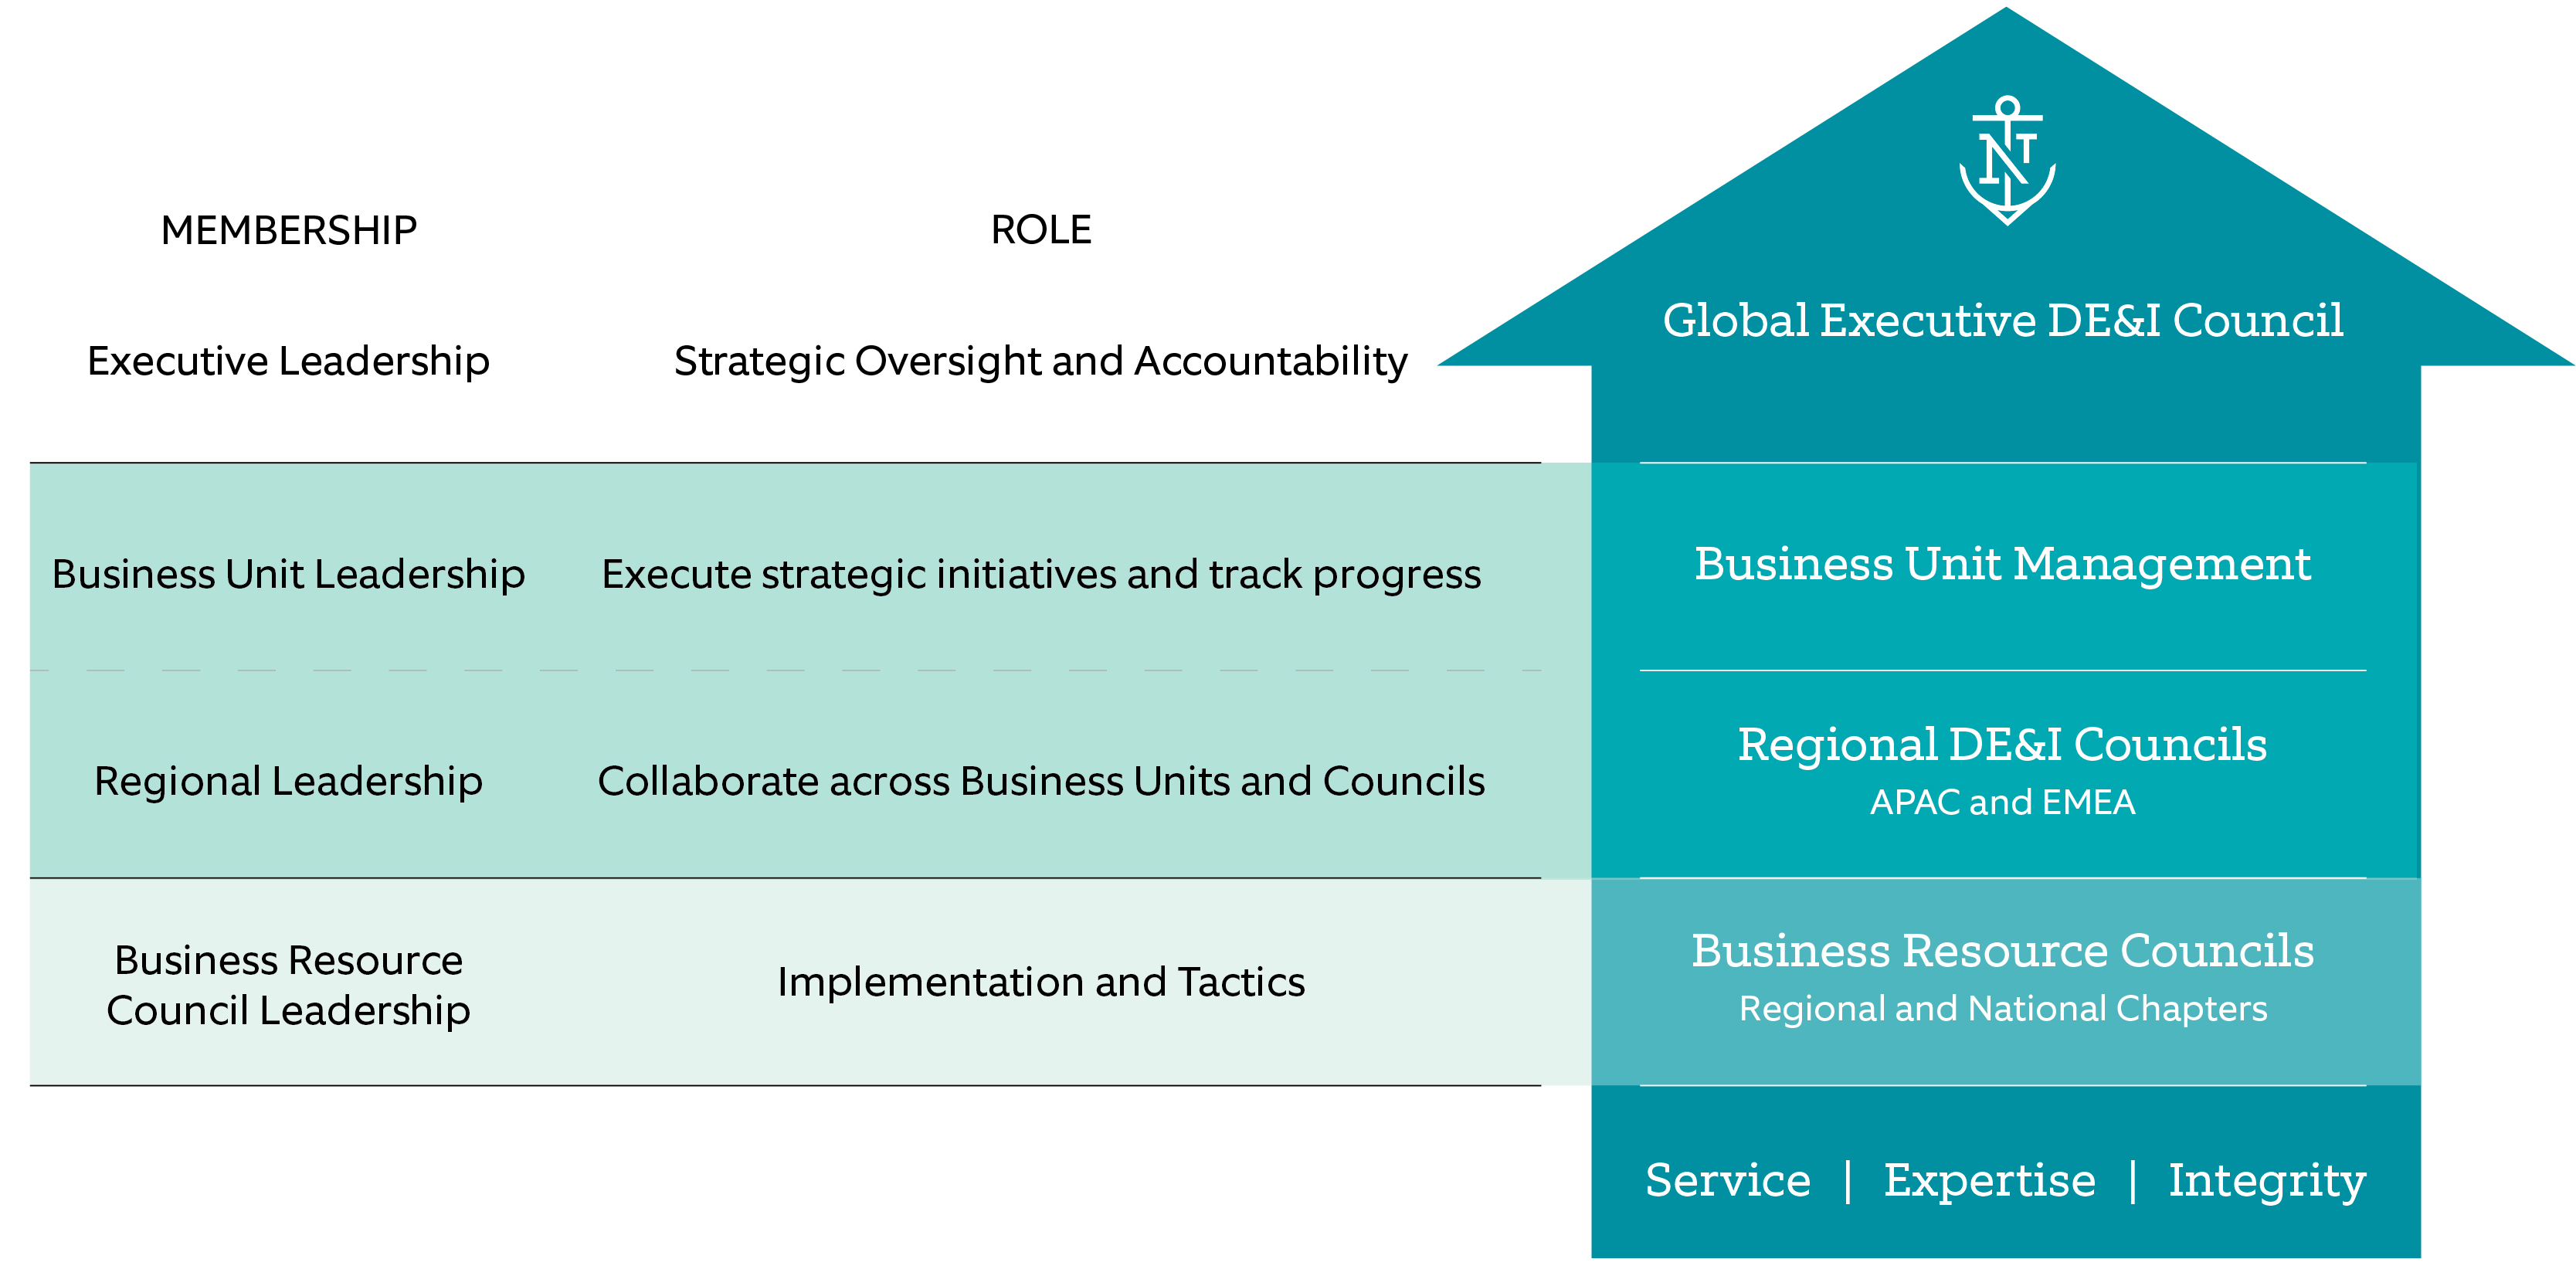 2019 CSR Report - Global Executive DE&I Council - Image